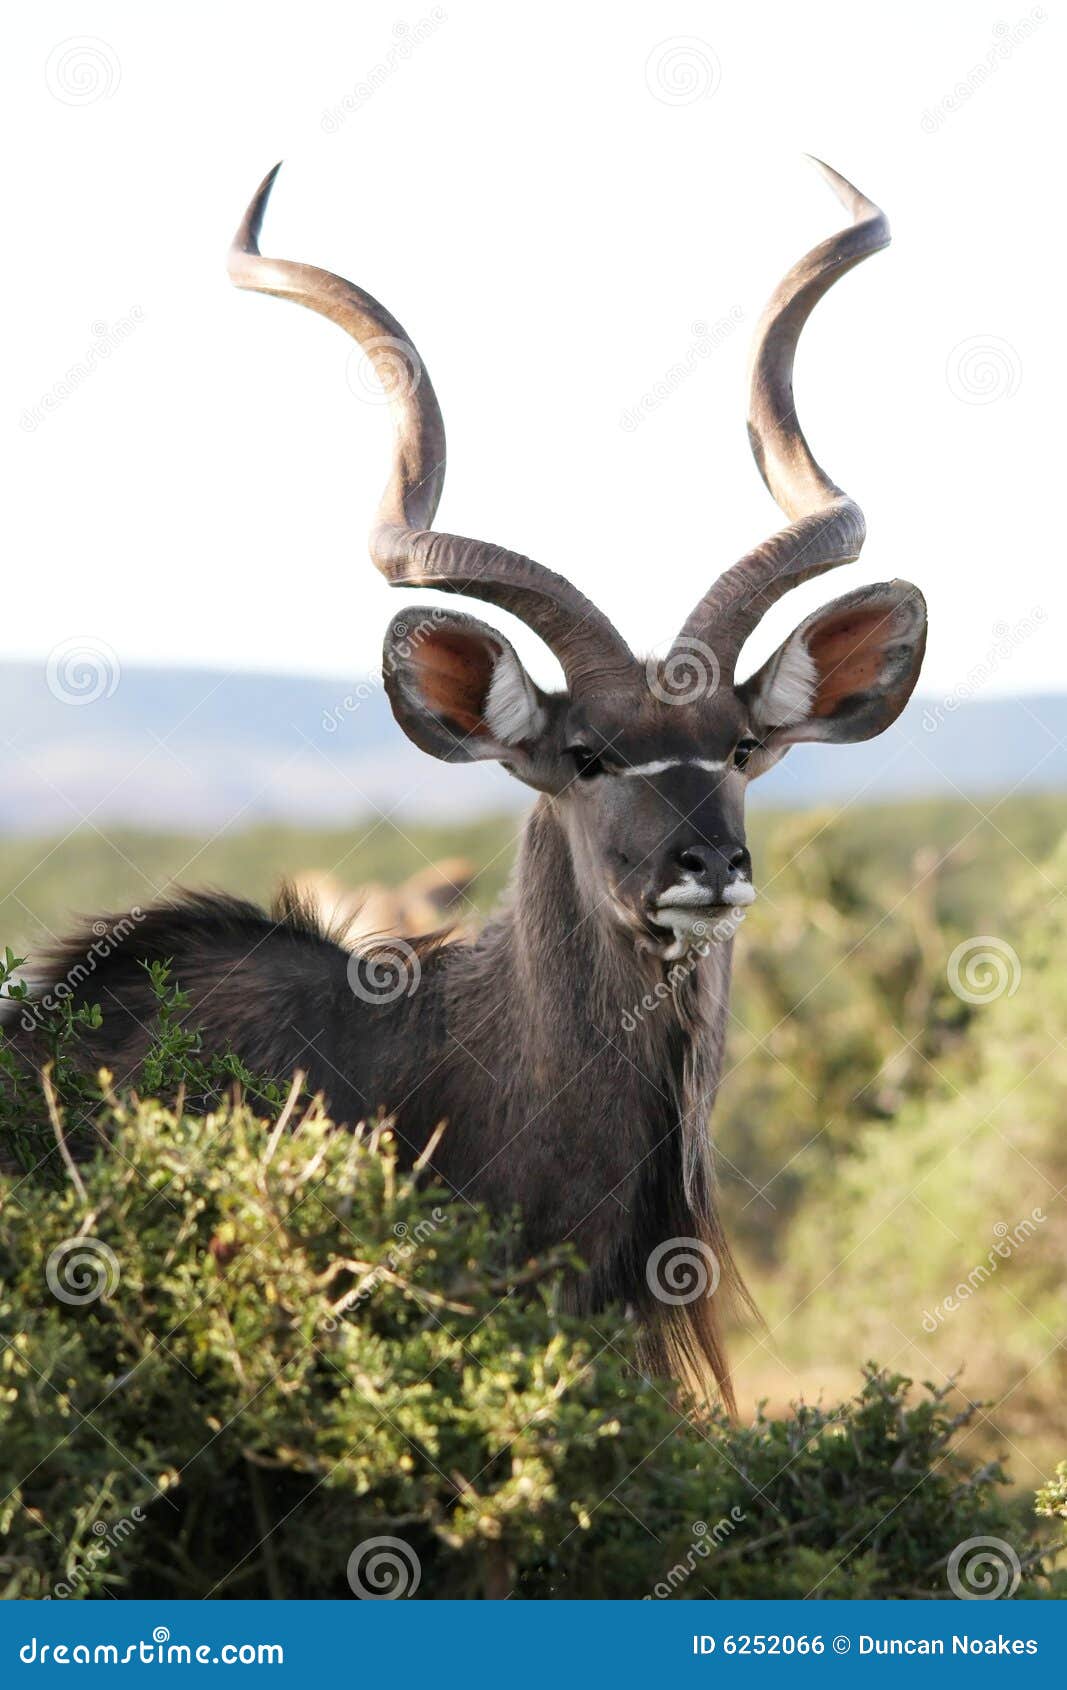 male kudu antelope